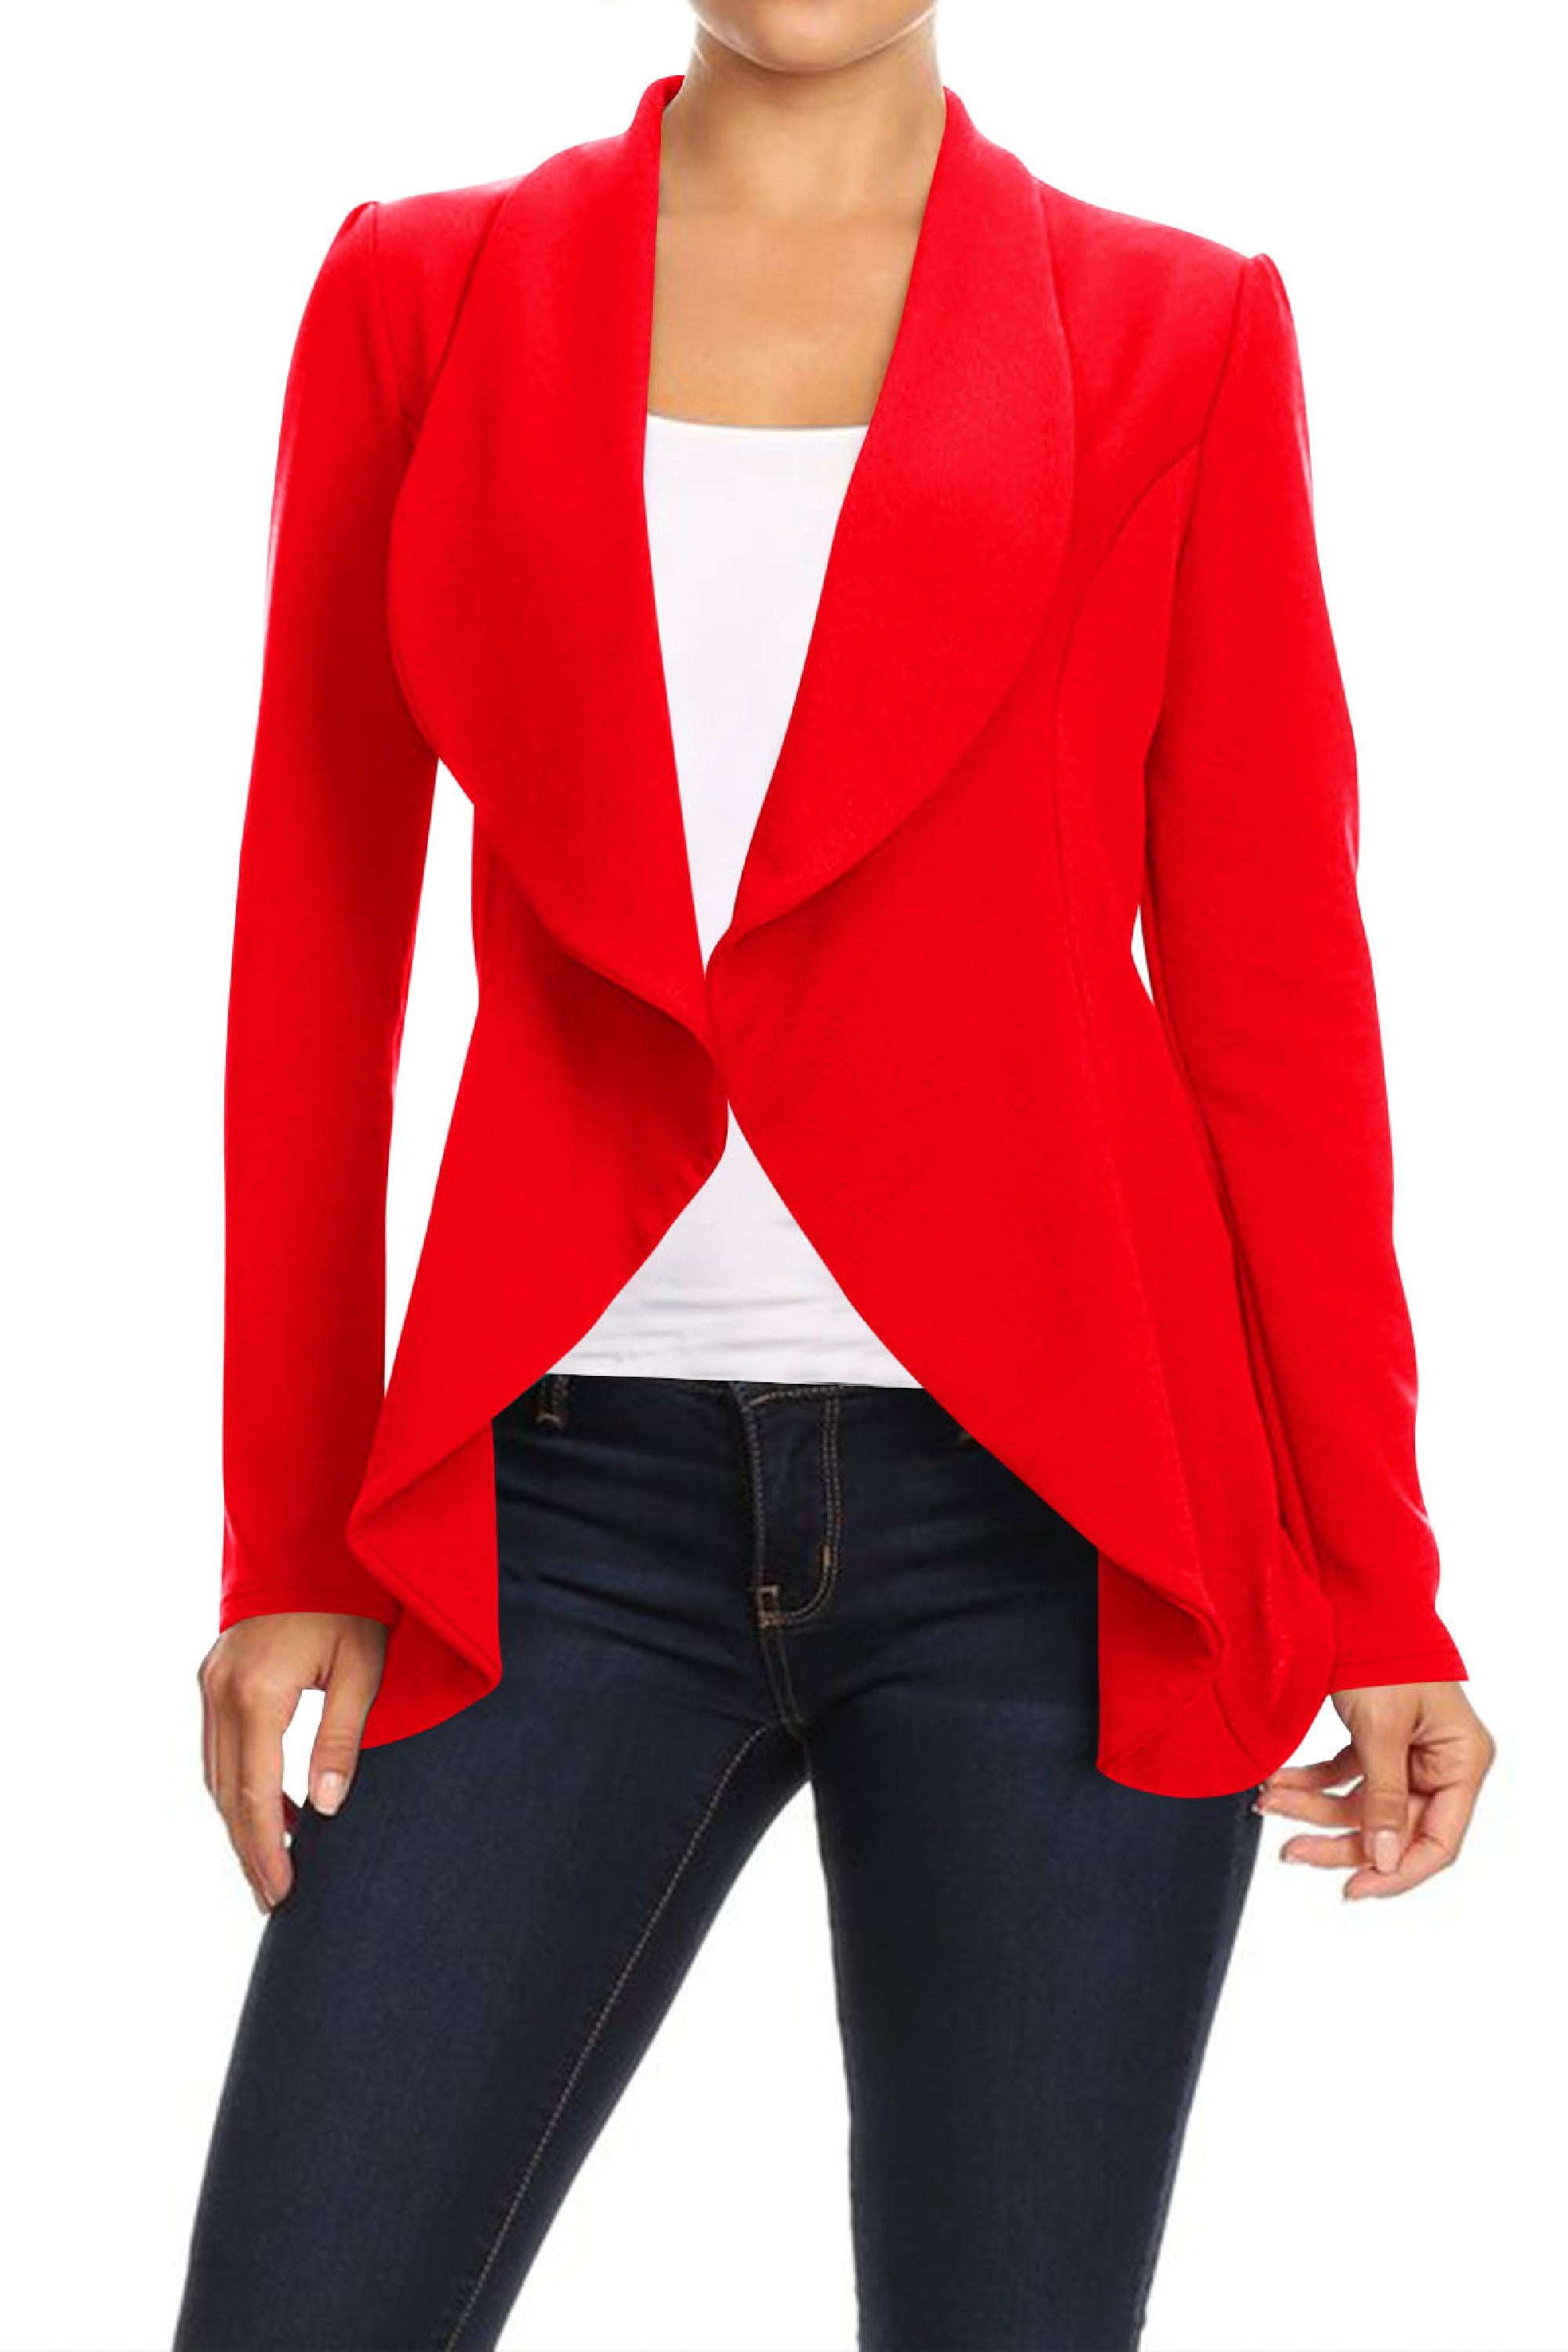 Women's Casual Office Work Wear Long Sleeves Open Front Blazer Jacket S ...